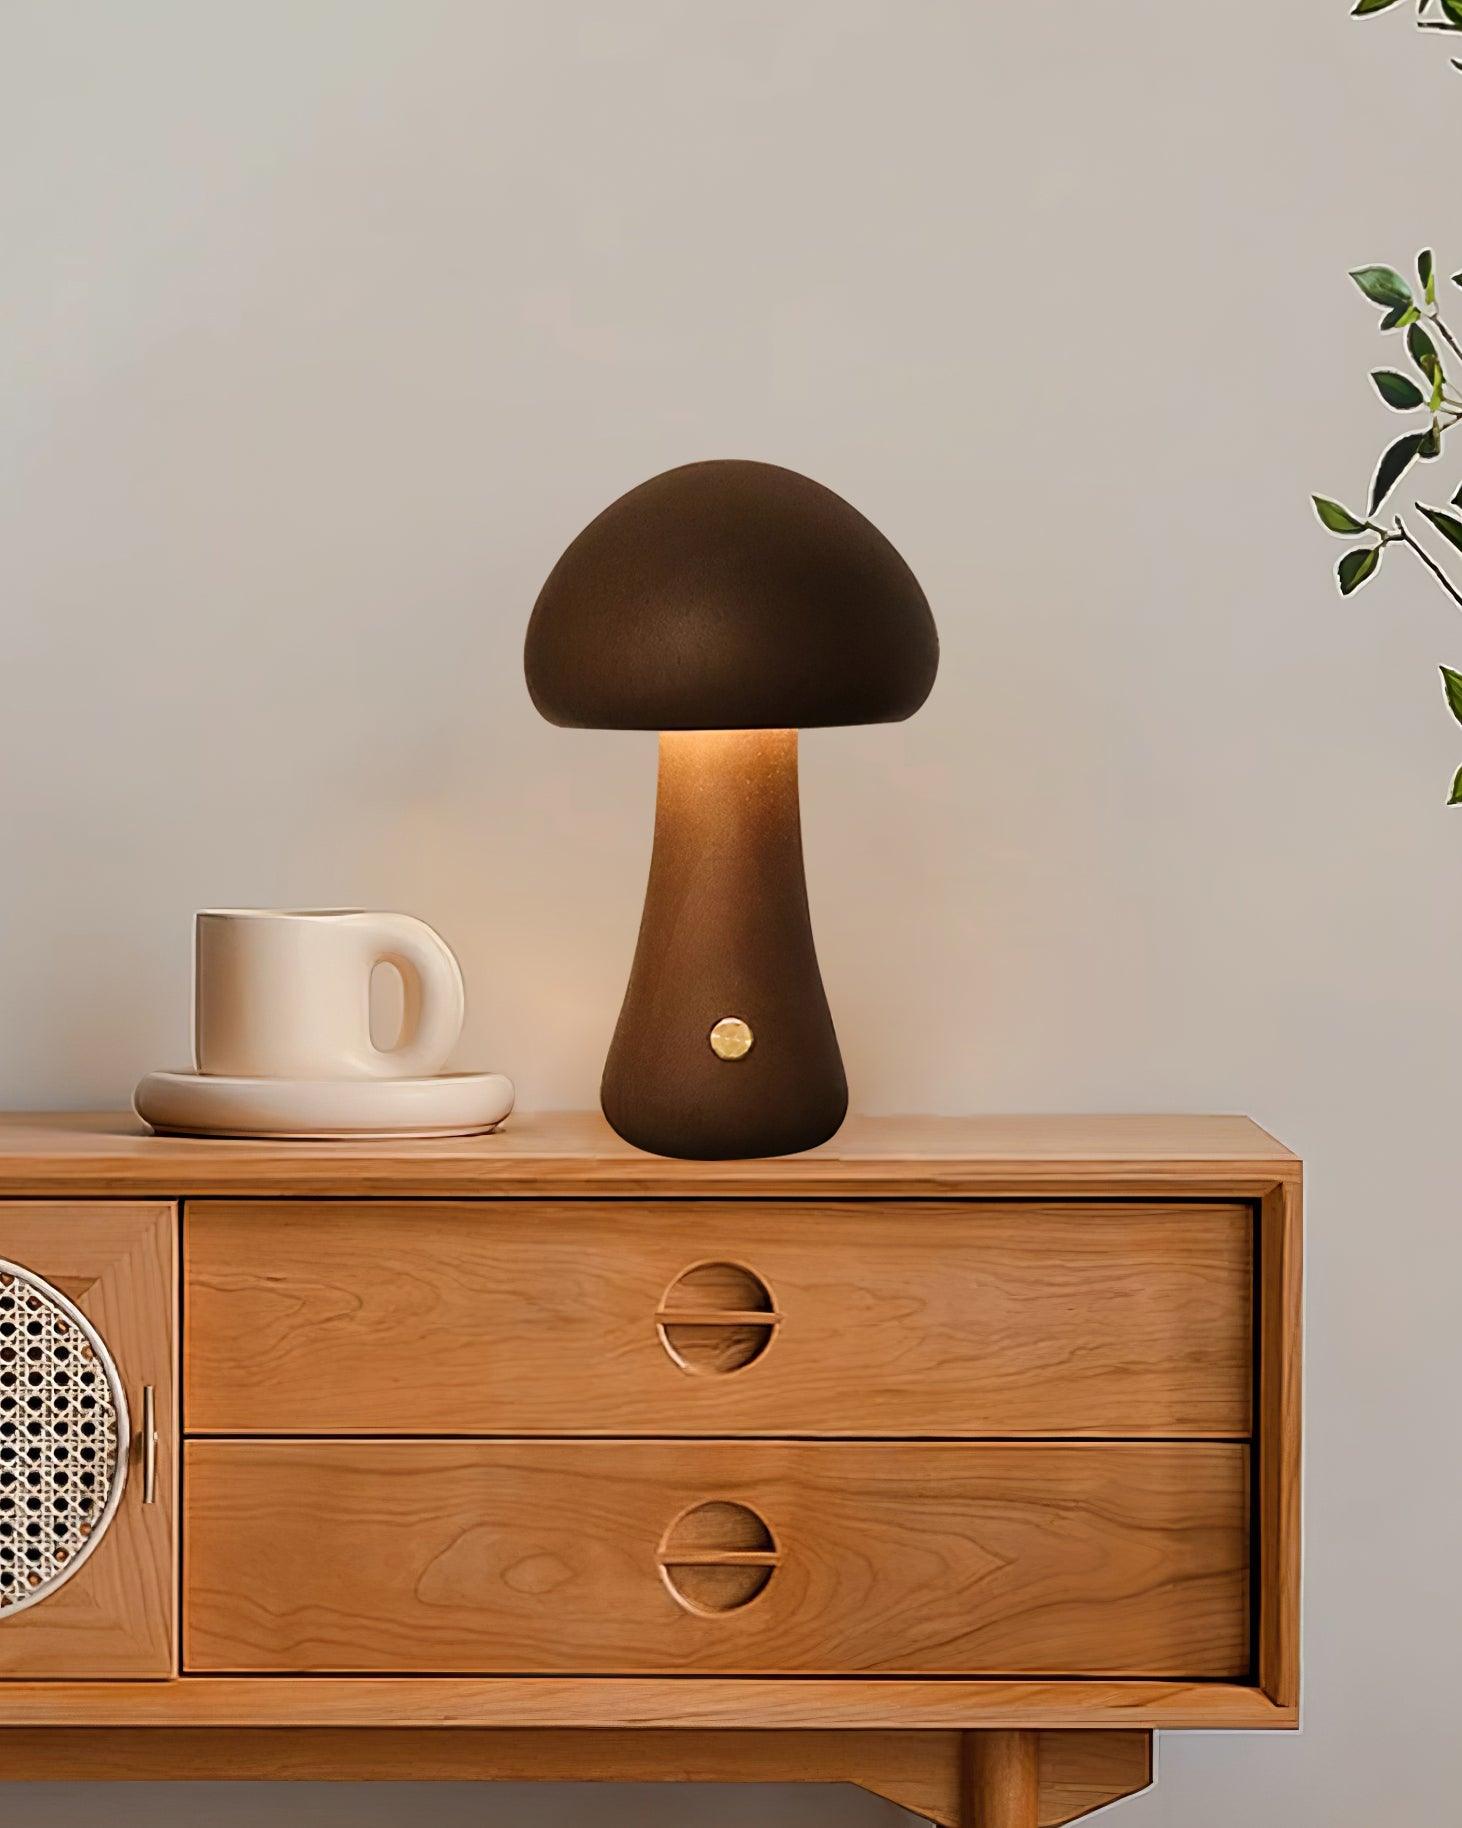 Wooden Mushroom Table Lamp 3.9″- 6.5″ - Docos